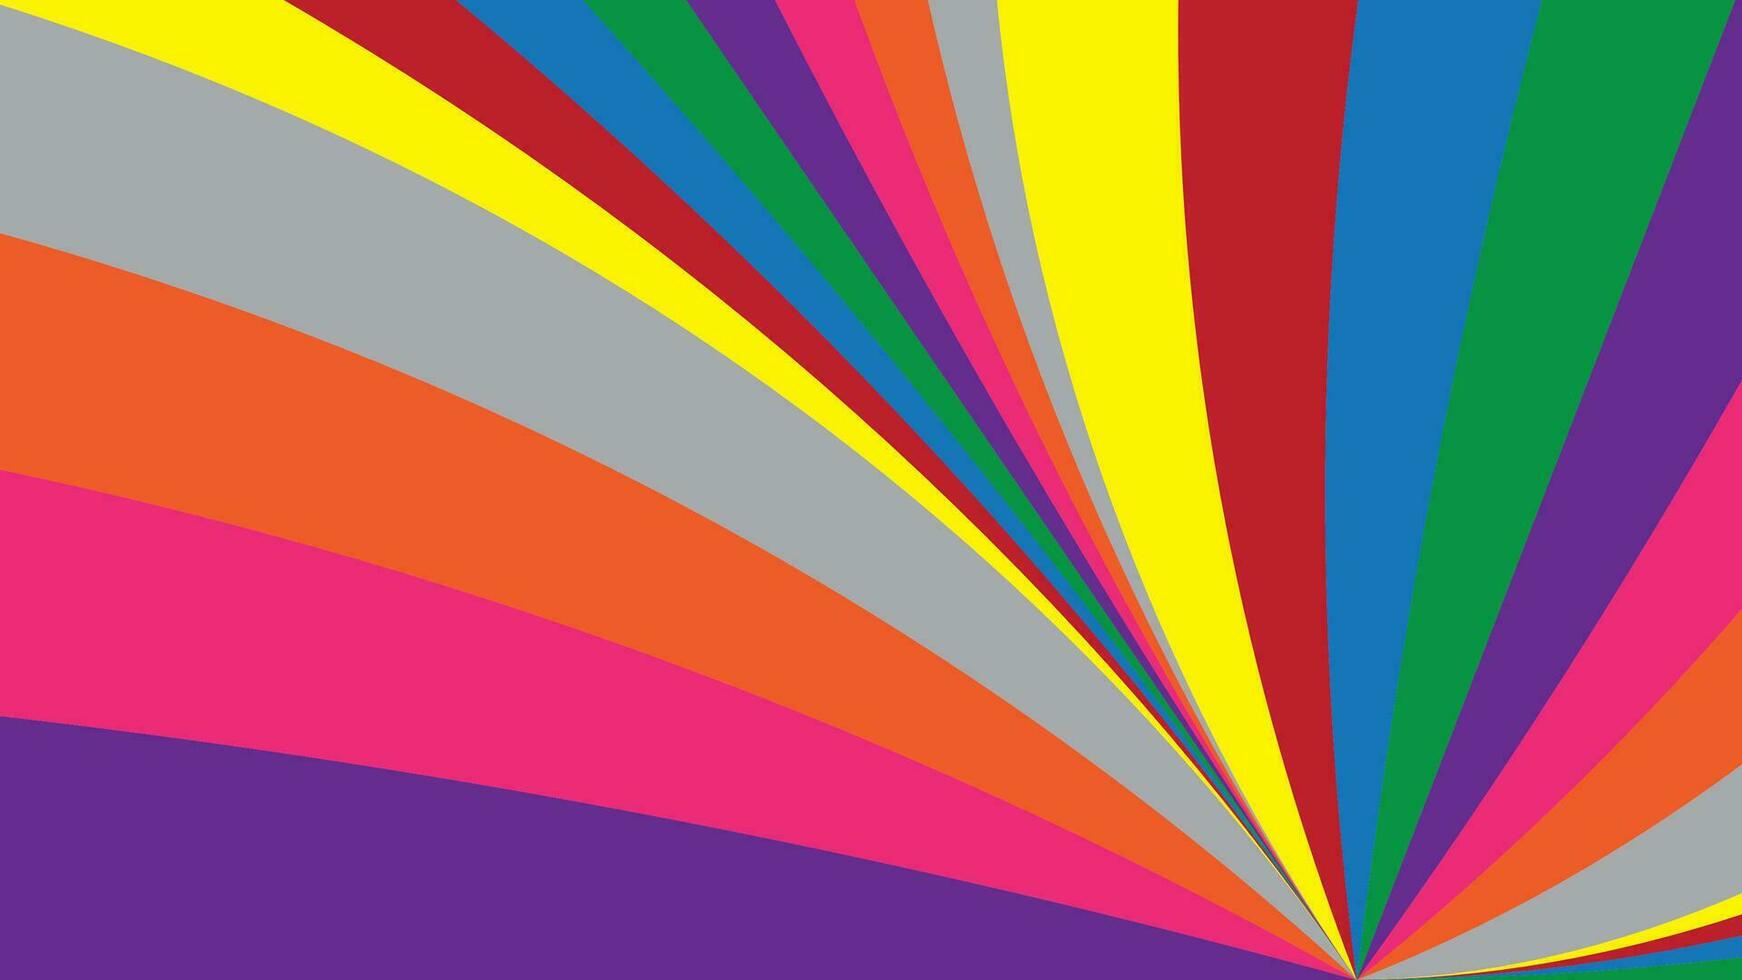 vistoso modelo con curva línea azul, rojo, amarillo, gris púrpura, naranja, verde y rosado color. vector ilustración.